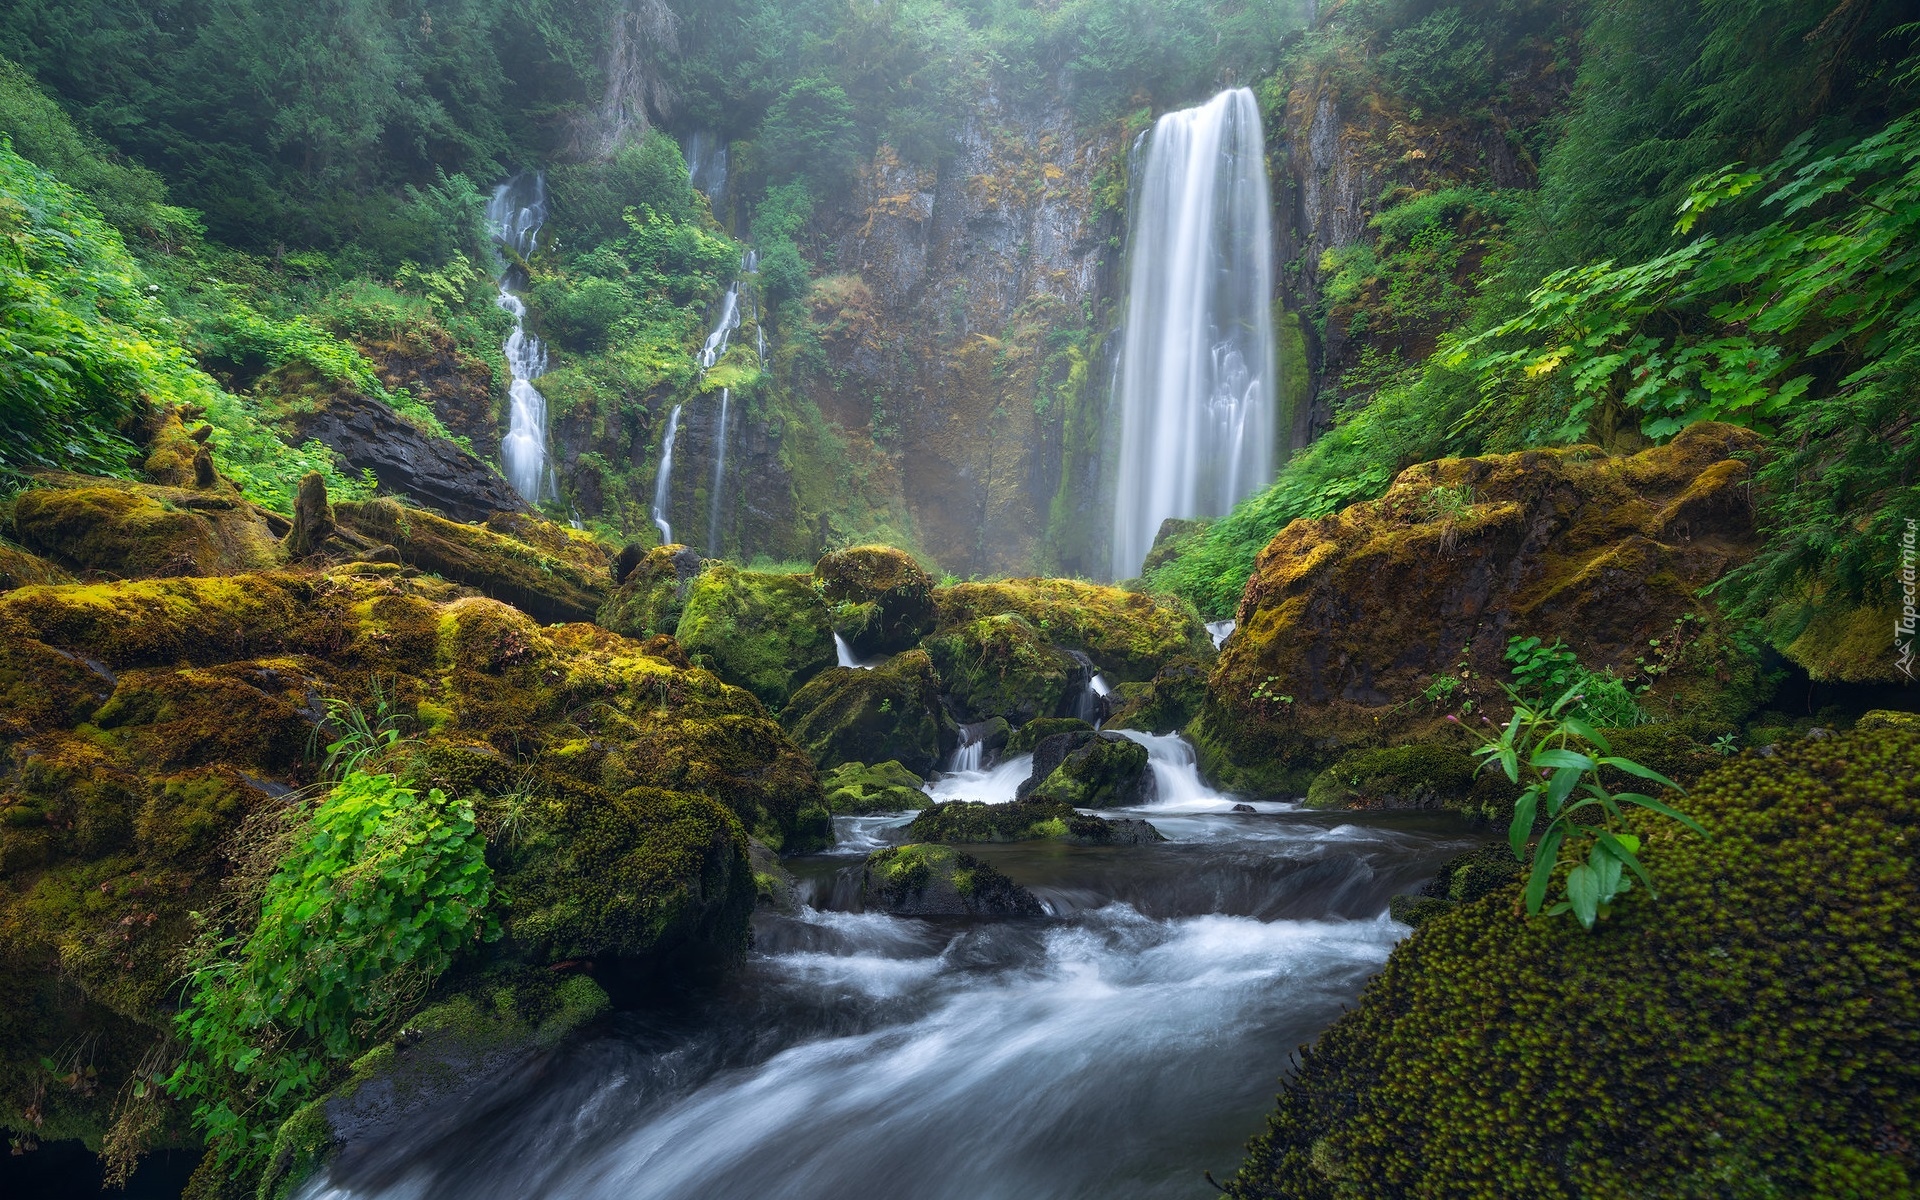 Wodospad, Rzeka, Omszone, Kamienie, Głazy, Skały, Las, Gifford Pinchot National Forest, Oregon, Stany Zjednoczone